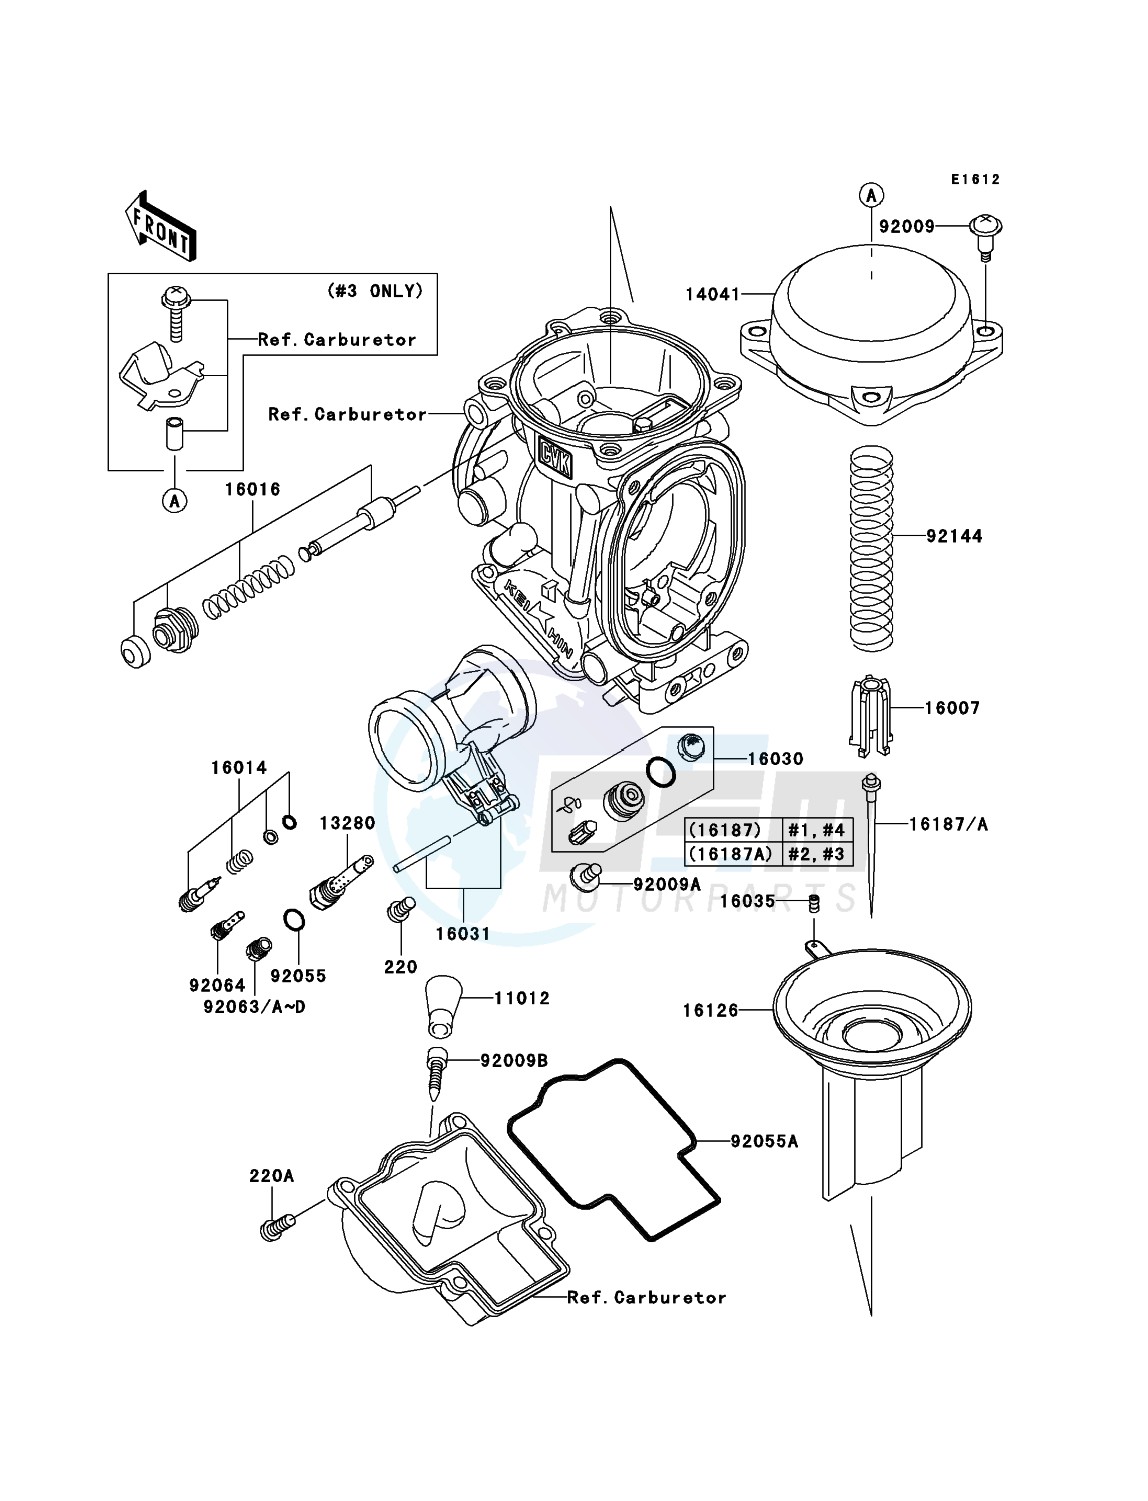 Carburetor Parts blueprint